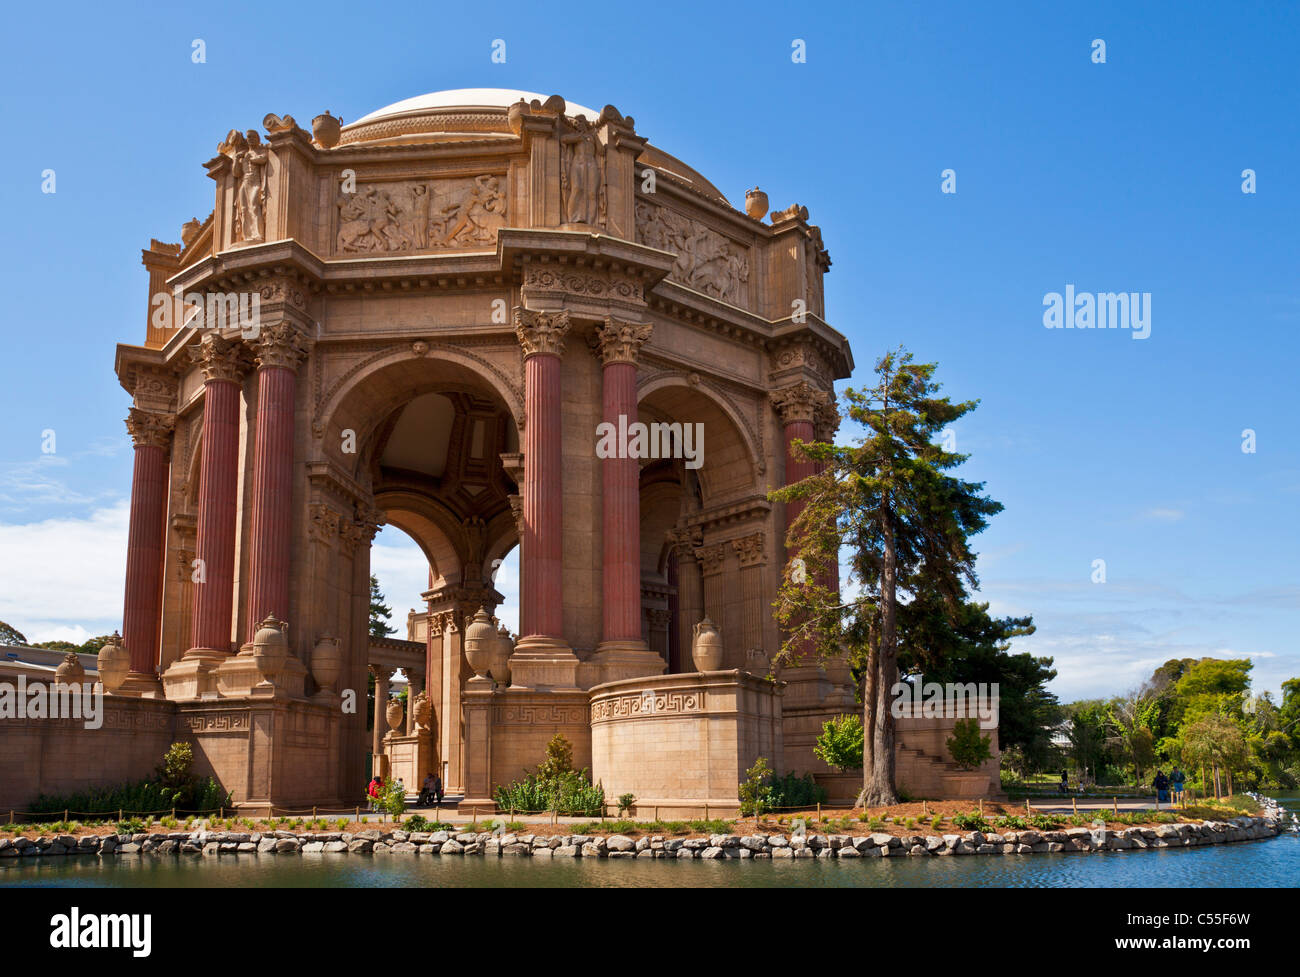 Palast der schönen Künste San Francisco Presidio Baugebiet California Vereinigten Staaten von Amerika USA Stockfoto